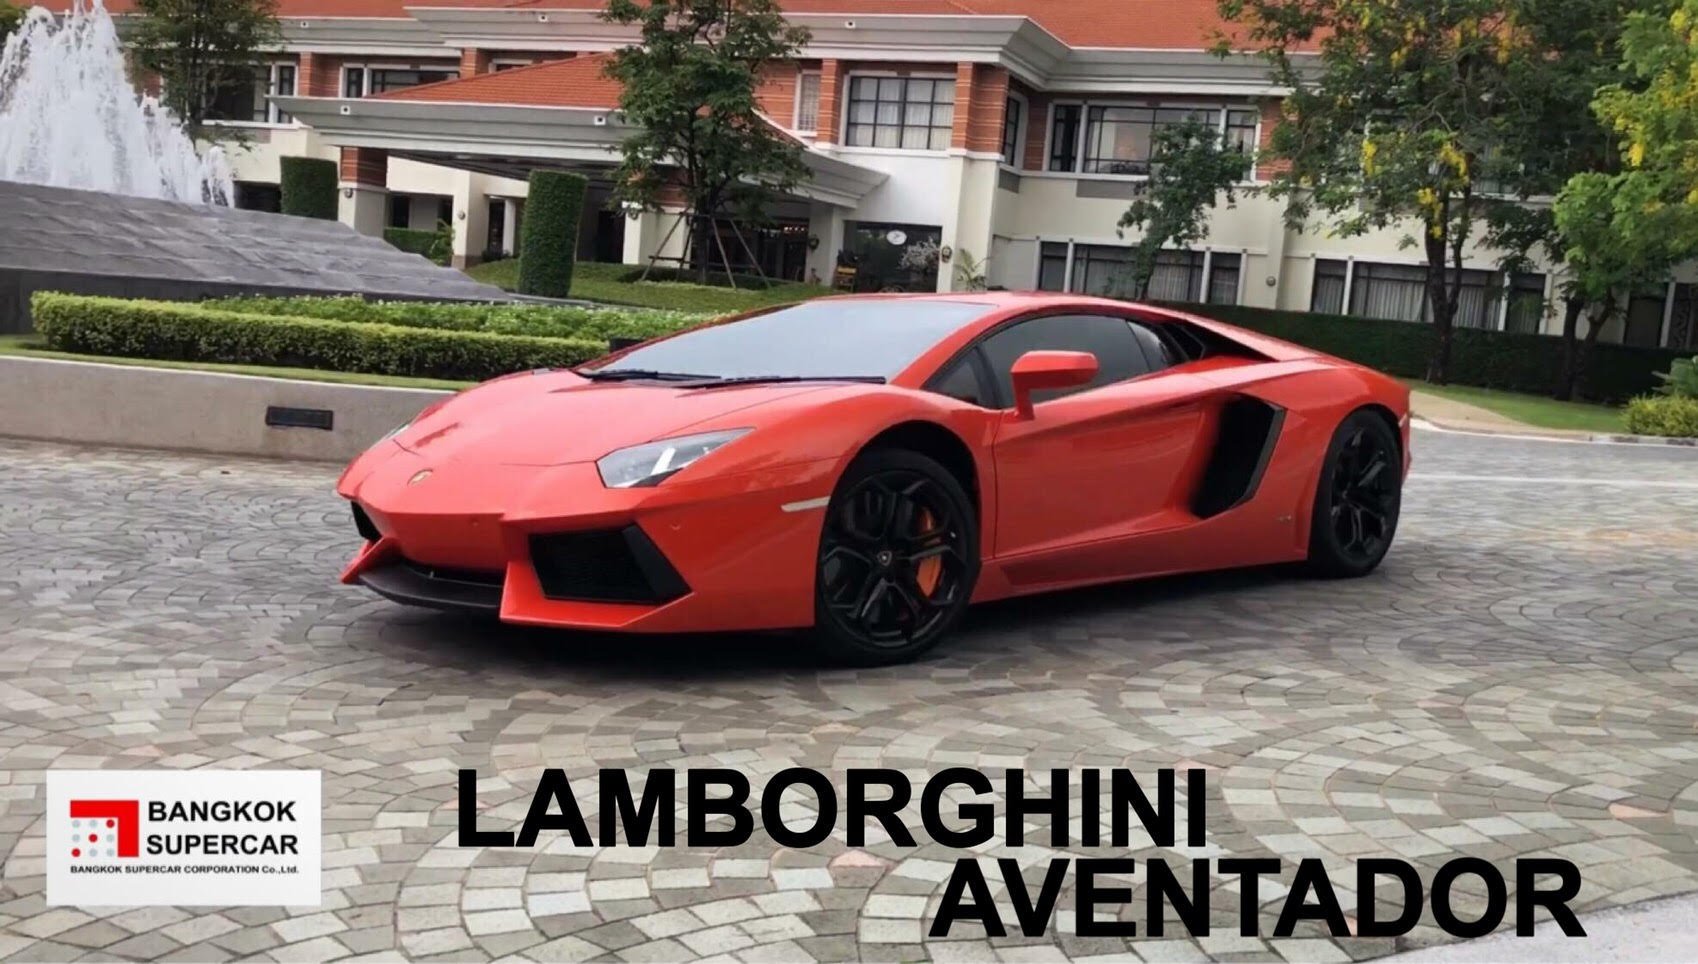 ขอบคุณลูกค้าที่เช่ารถซุปเปอร์ คาร์สุดหรู Lamborghini Aventador ถ่ายรีวิวสินค้ากับทางเราค่ะ